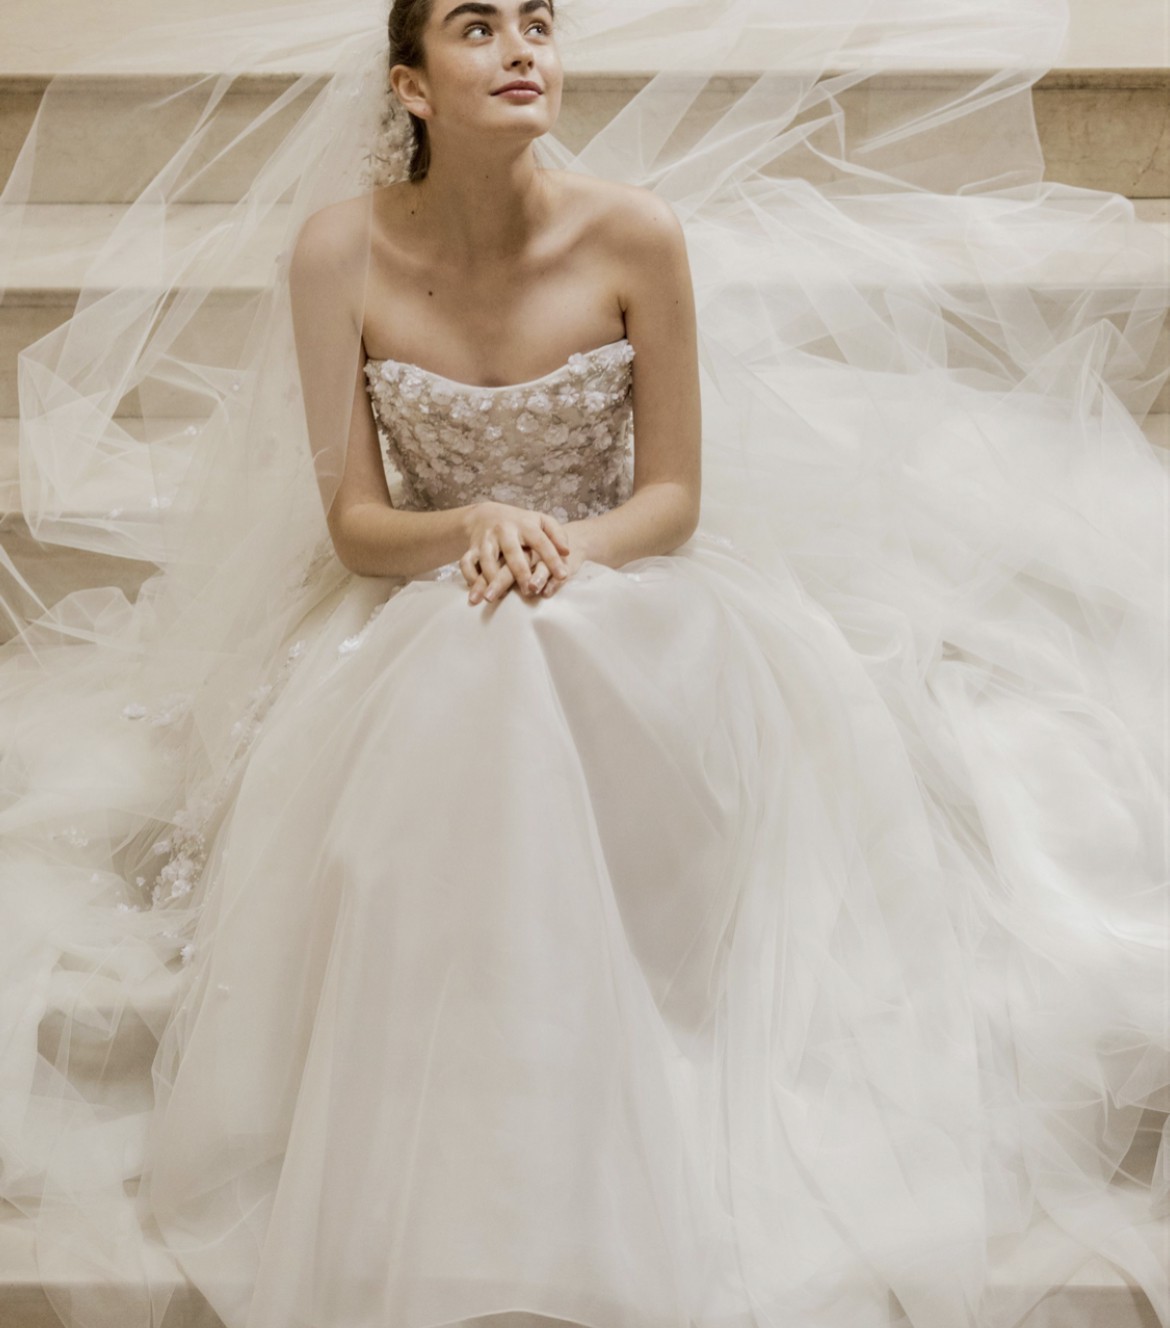 Carolina Herrera Hadley New Wedding Dress Save 35% - Stillwhite